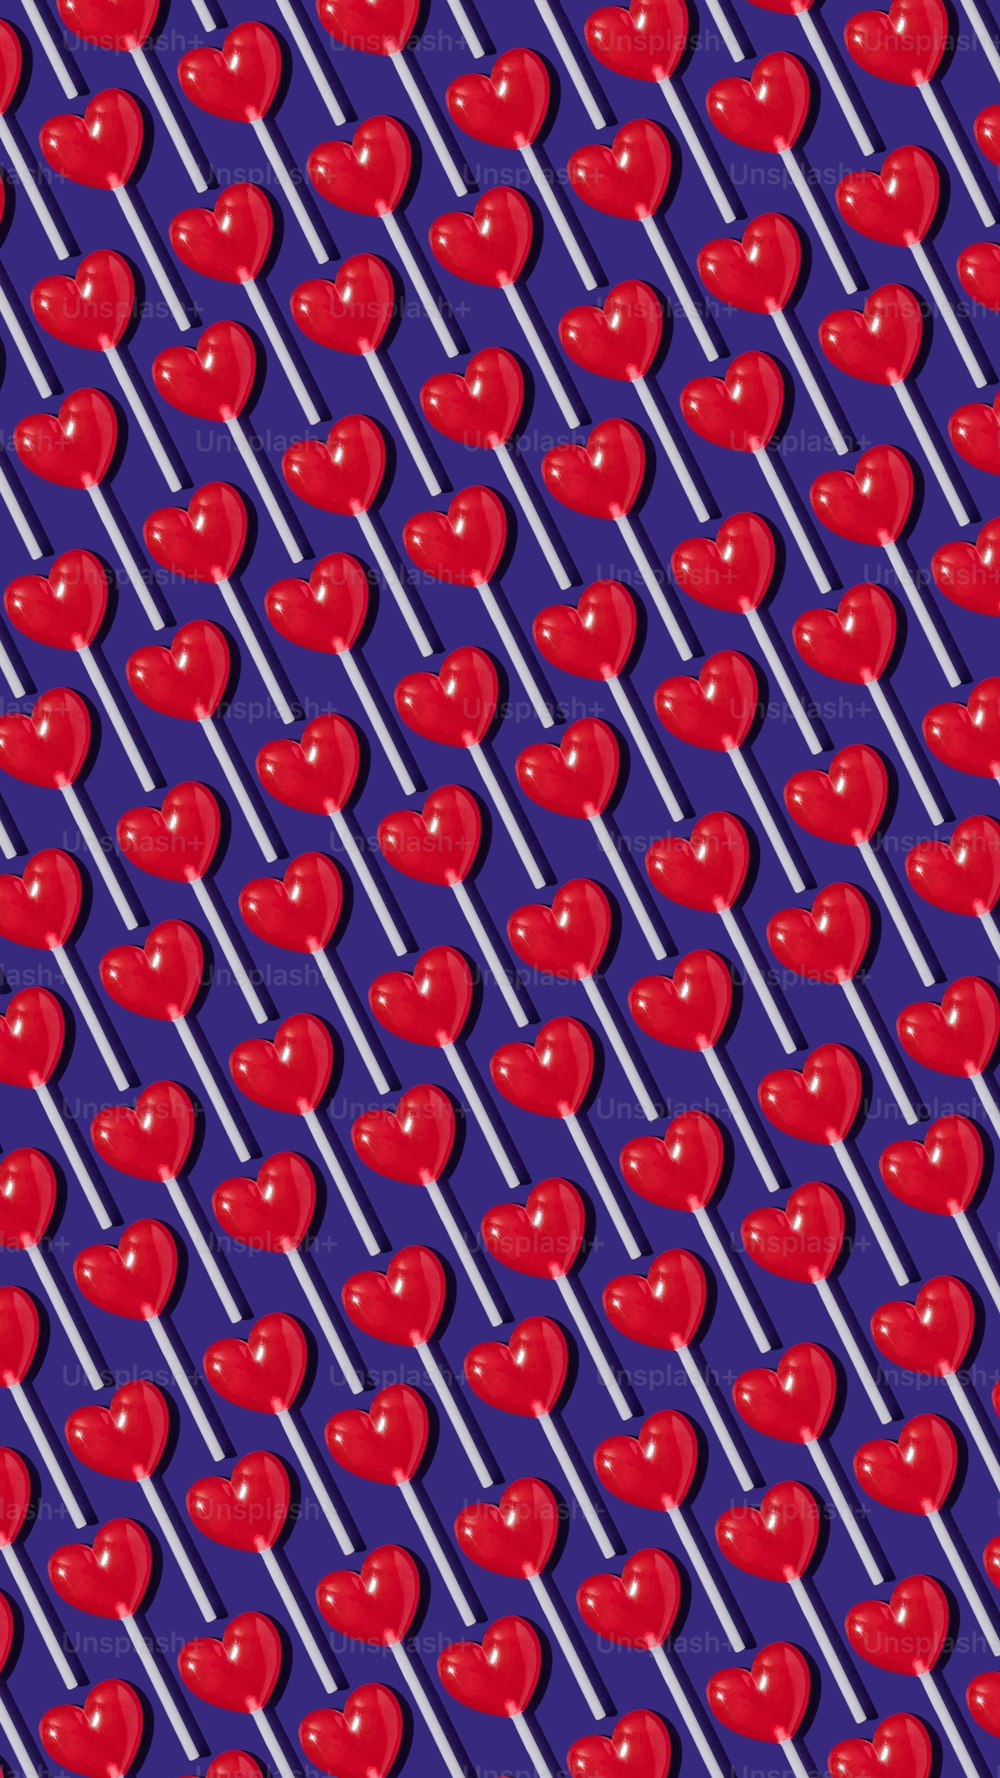 um padrão de maçãs vermelhas em um fundo roxo